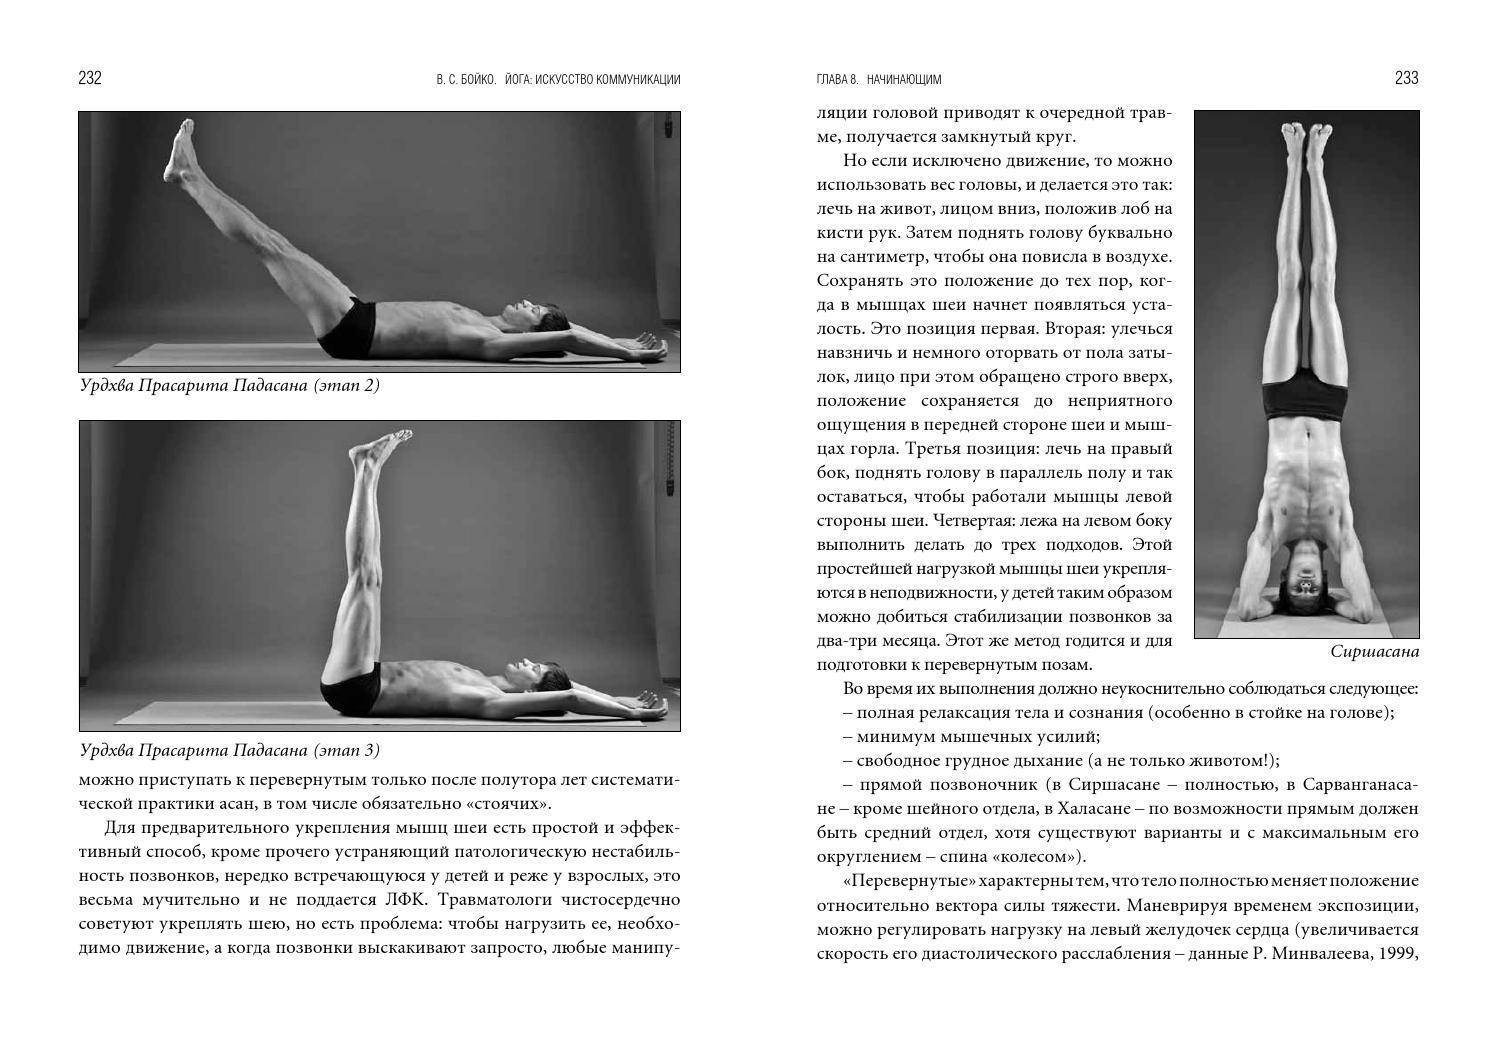 Урдхва прасарита падасана: техника выполнения асаны в йоге, ее перевод и польза с фото и видео